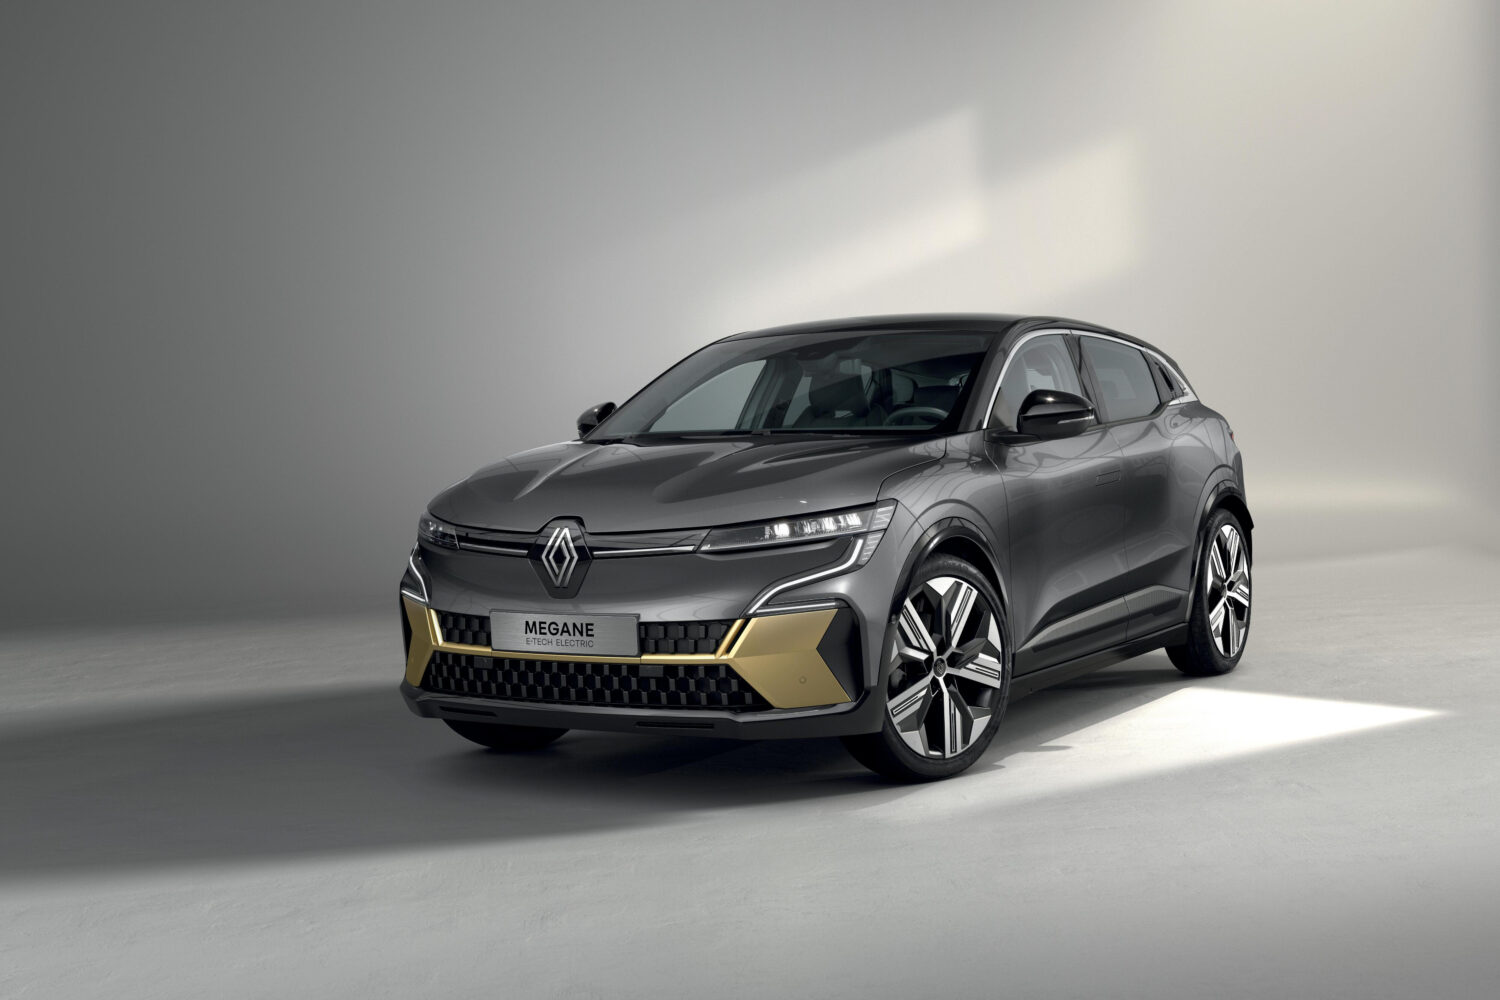 2022 - Story Renault - Coloriste : un métier à part au sein du Design Renault